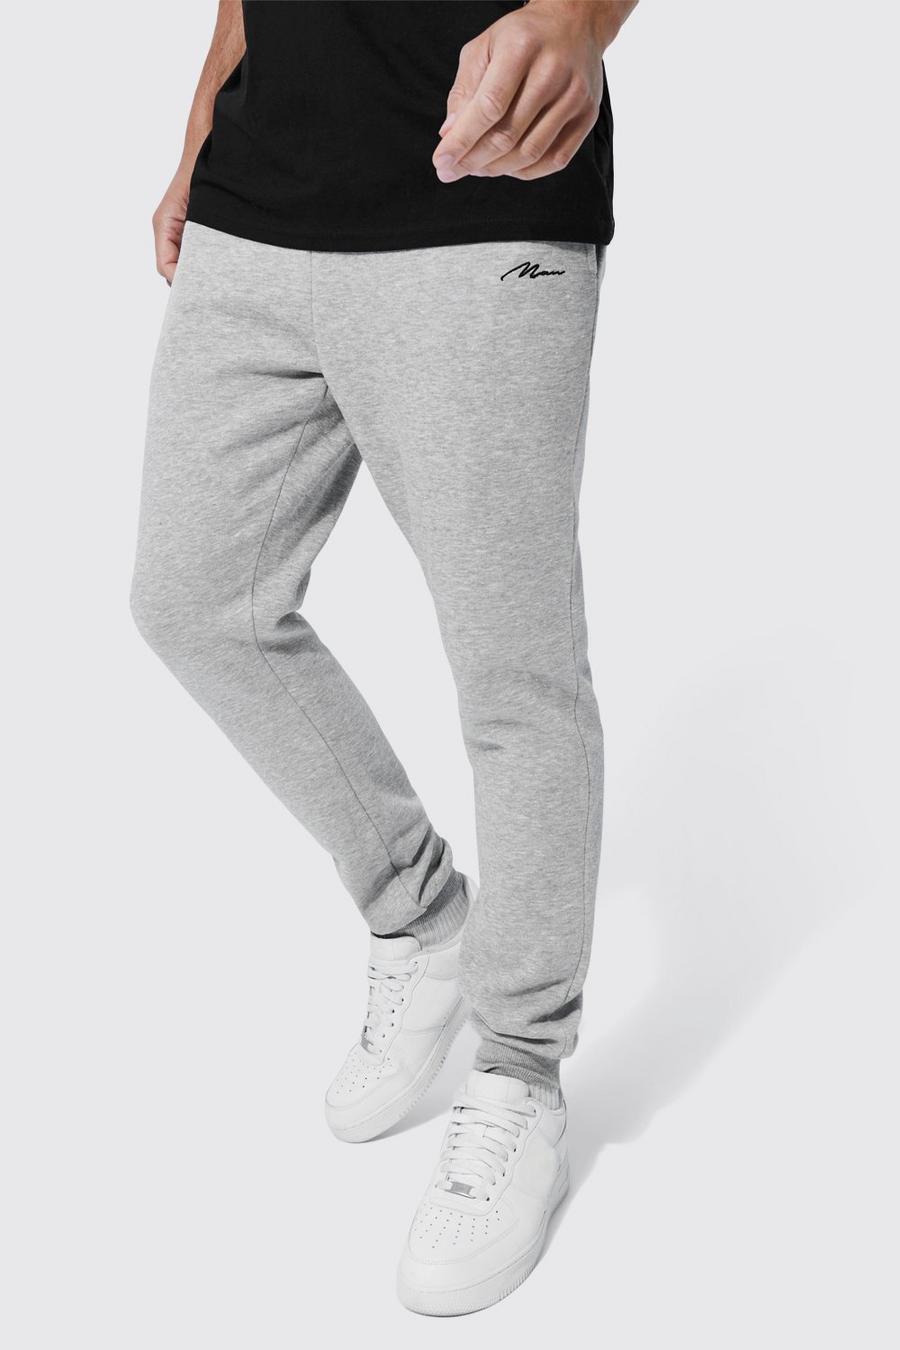 Pantalón deportivo Tall básico pitillo con firma MAN, Grey marl gris